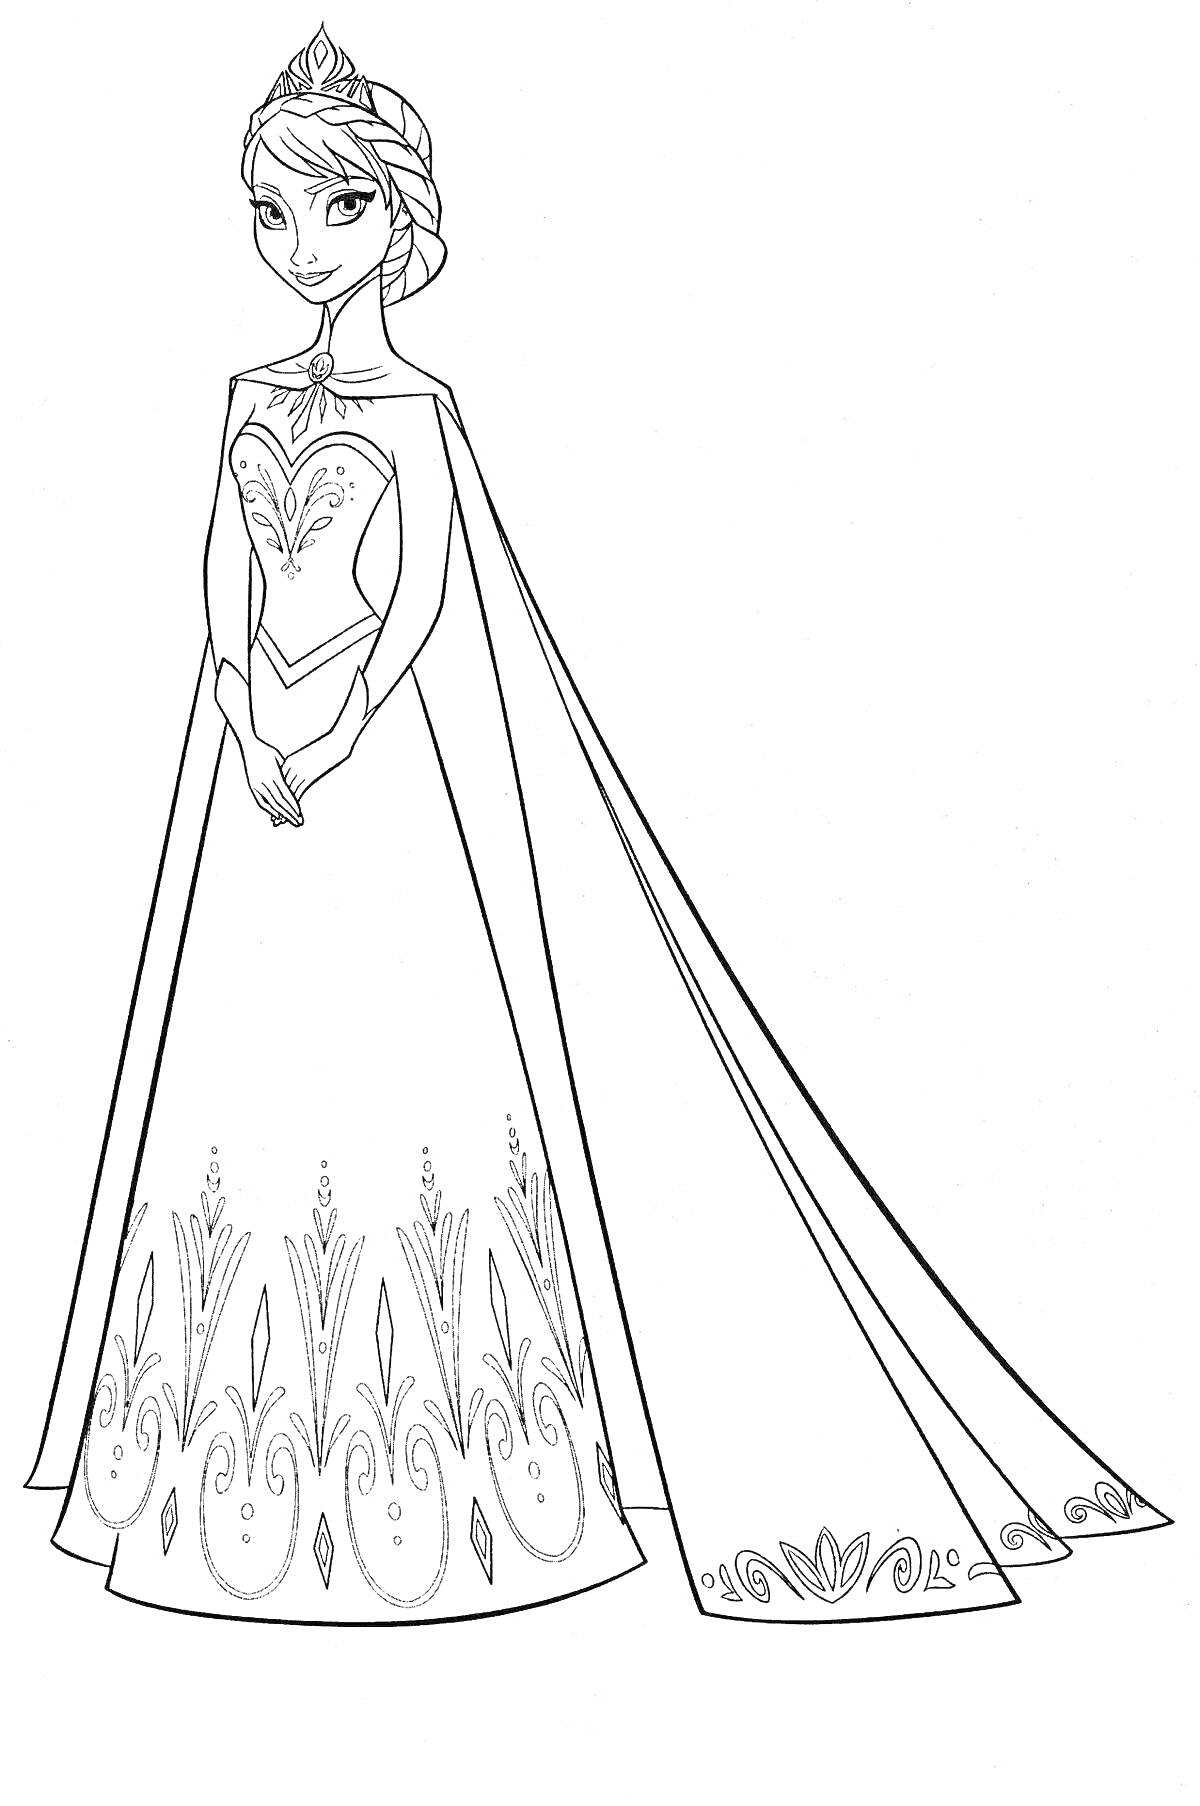 Раскраска Эльза в длинном платье с узорами и плащом, с короной